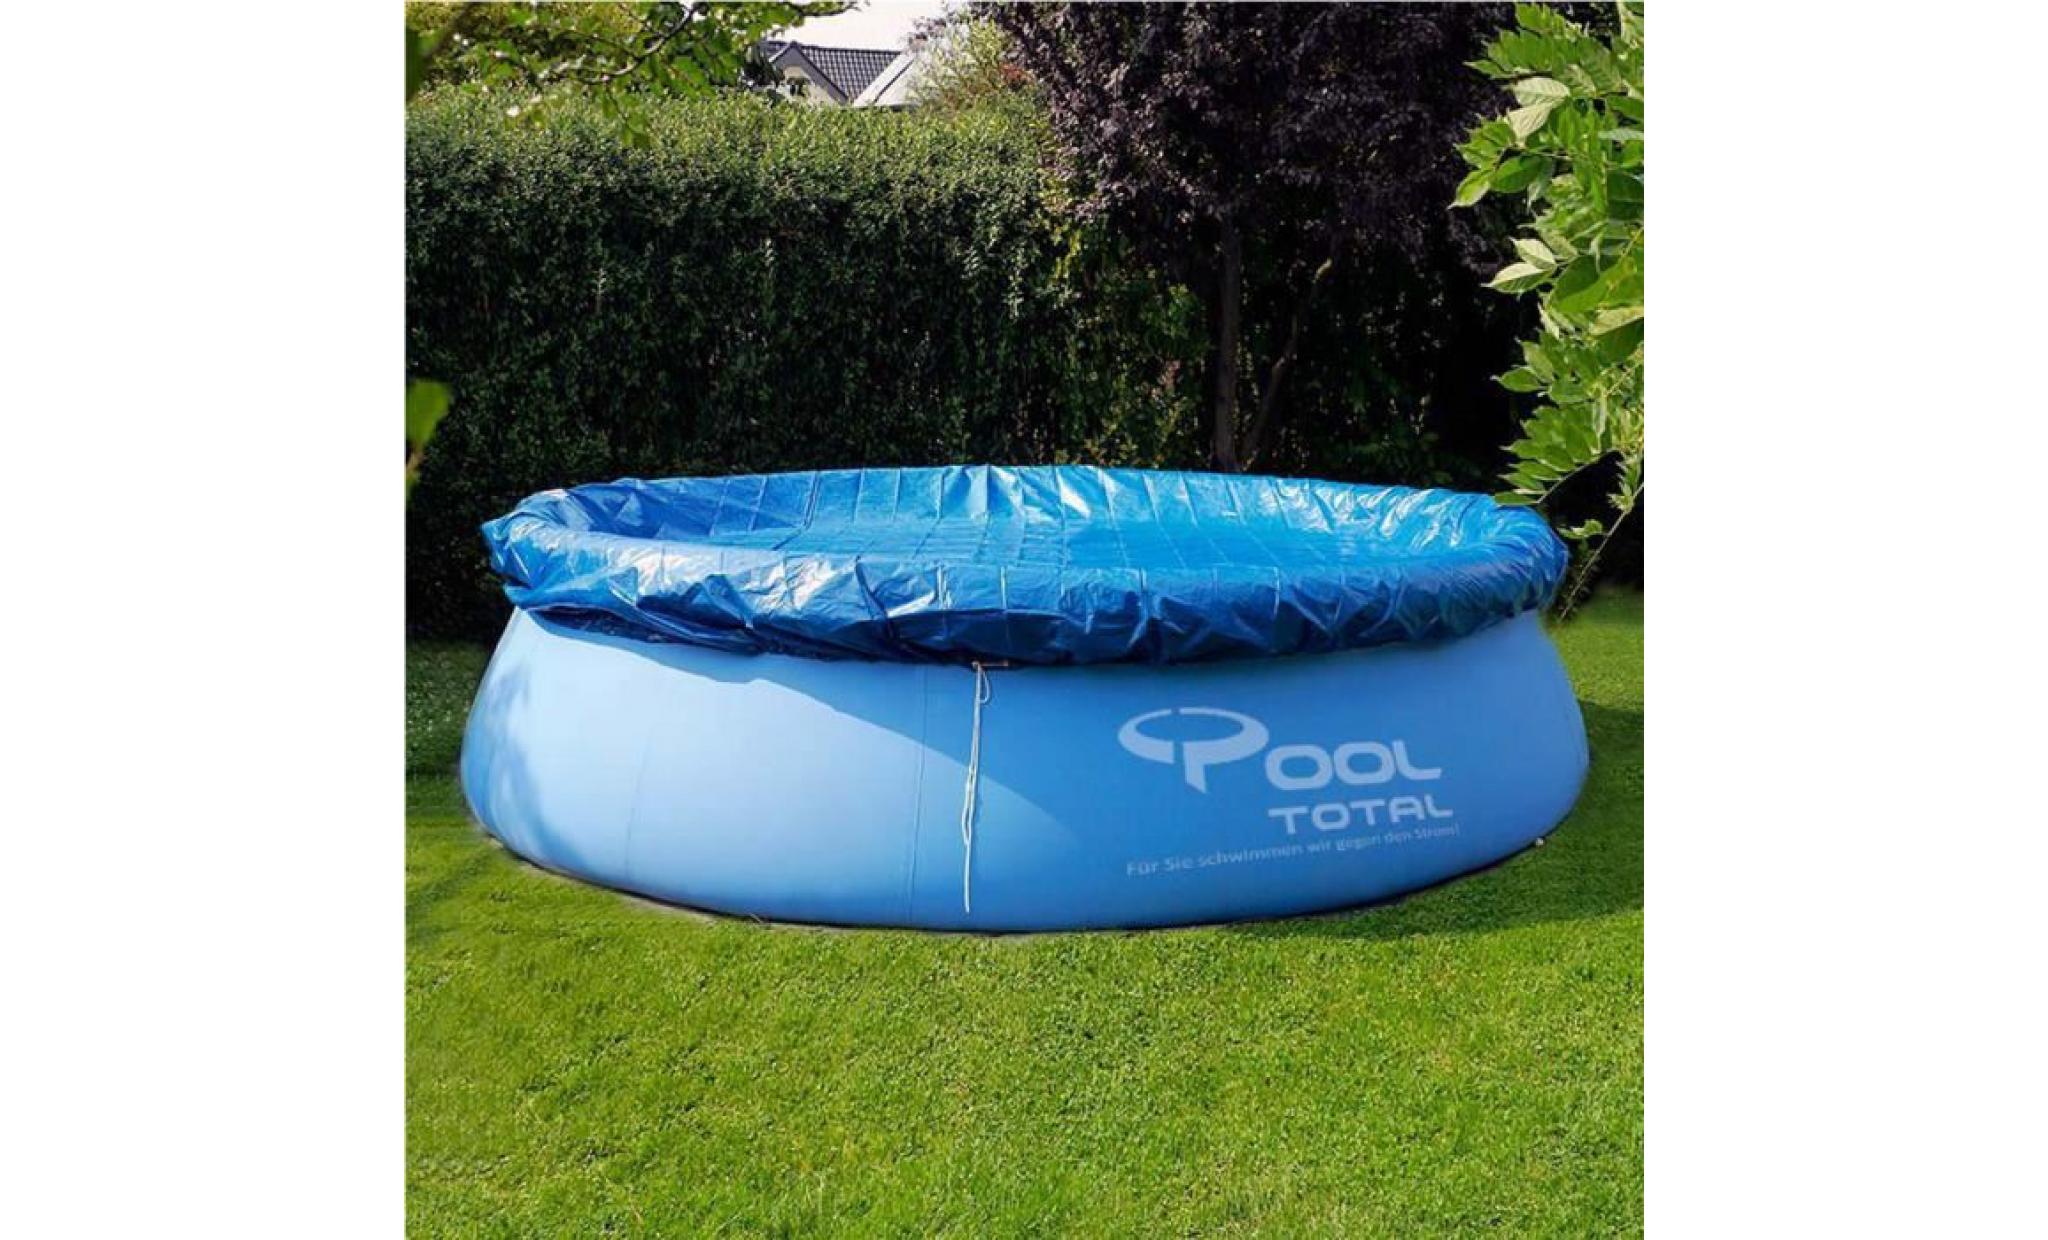 tempsa bache couverture ronde pour piscine jardin(sans piscine ) bleu ou noir (couleur aléatoire)305cm pas cher